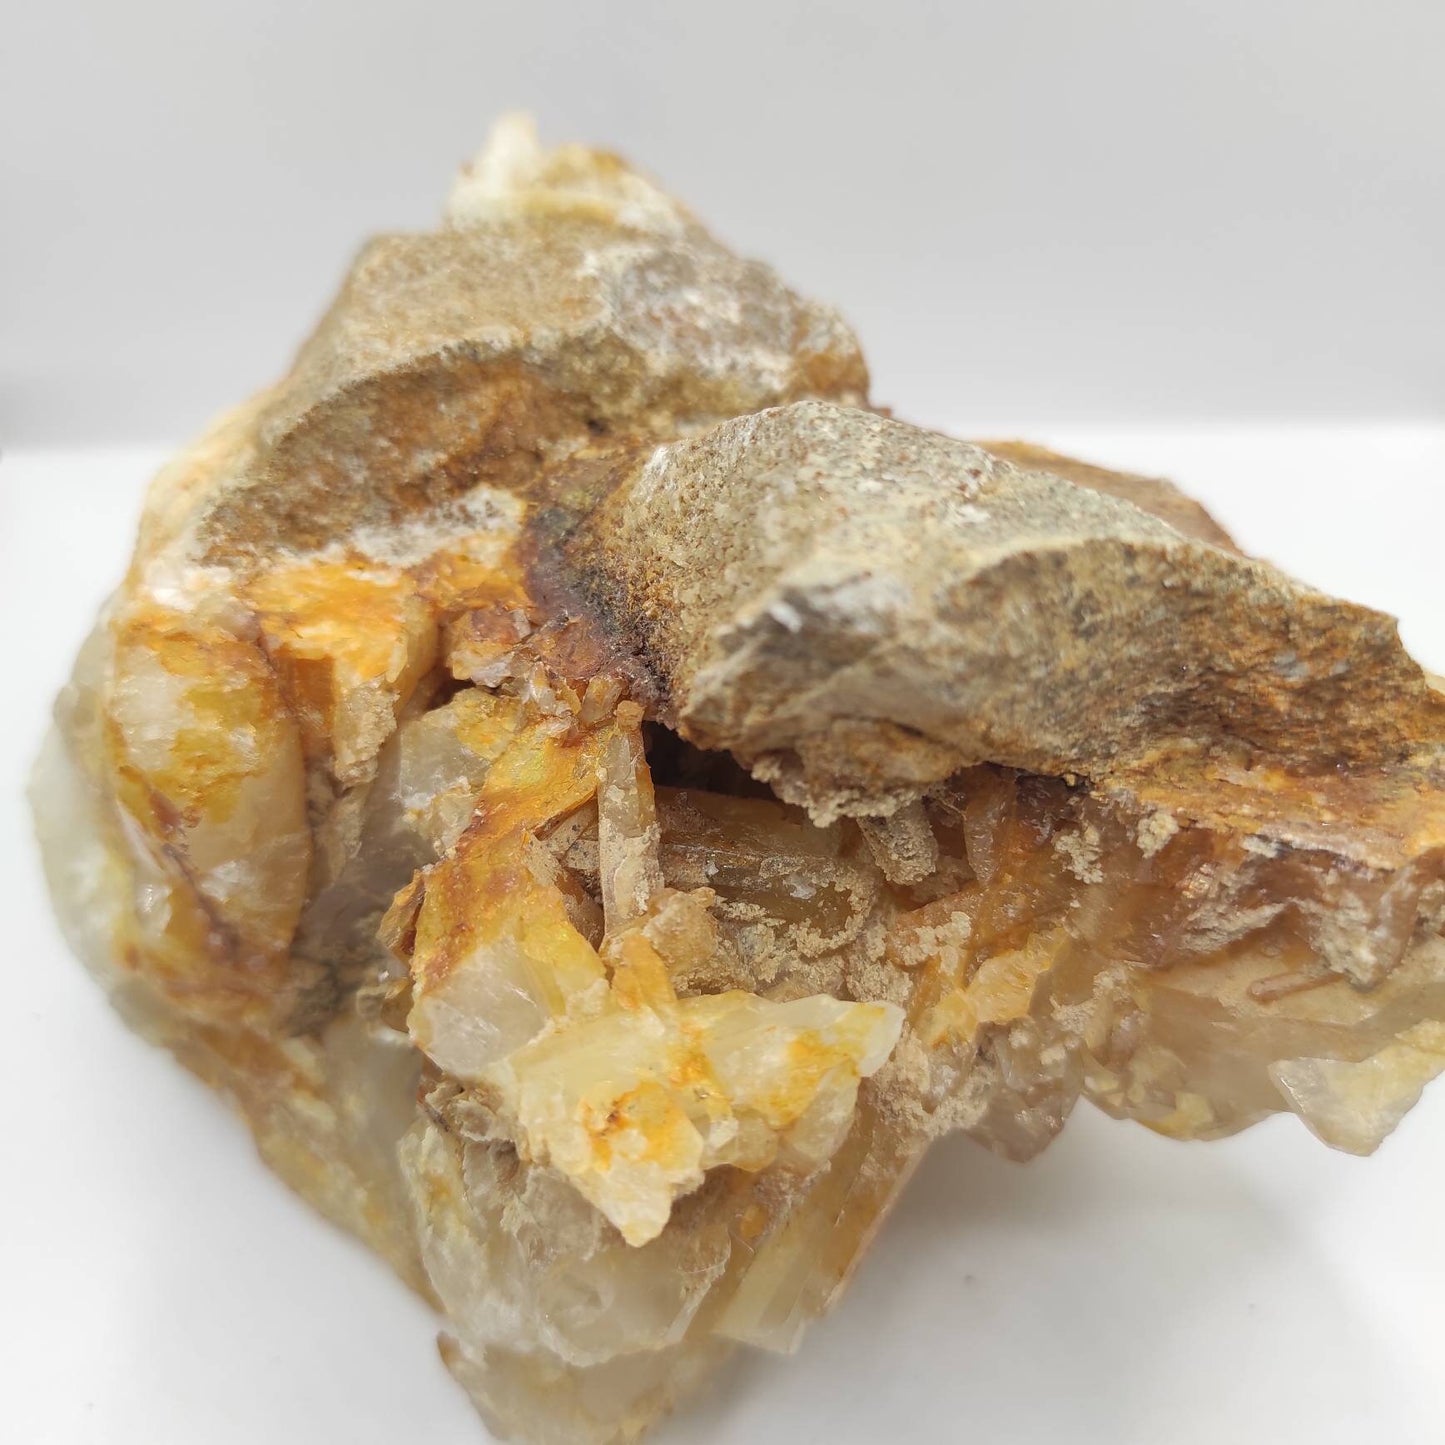 960g Large Quartz Crystal Cluster - Natural Yellow Quartz - Quartz Specimen from Pakistan - Natural Quartz Cluster Mineral Specimen